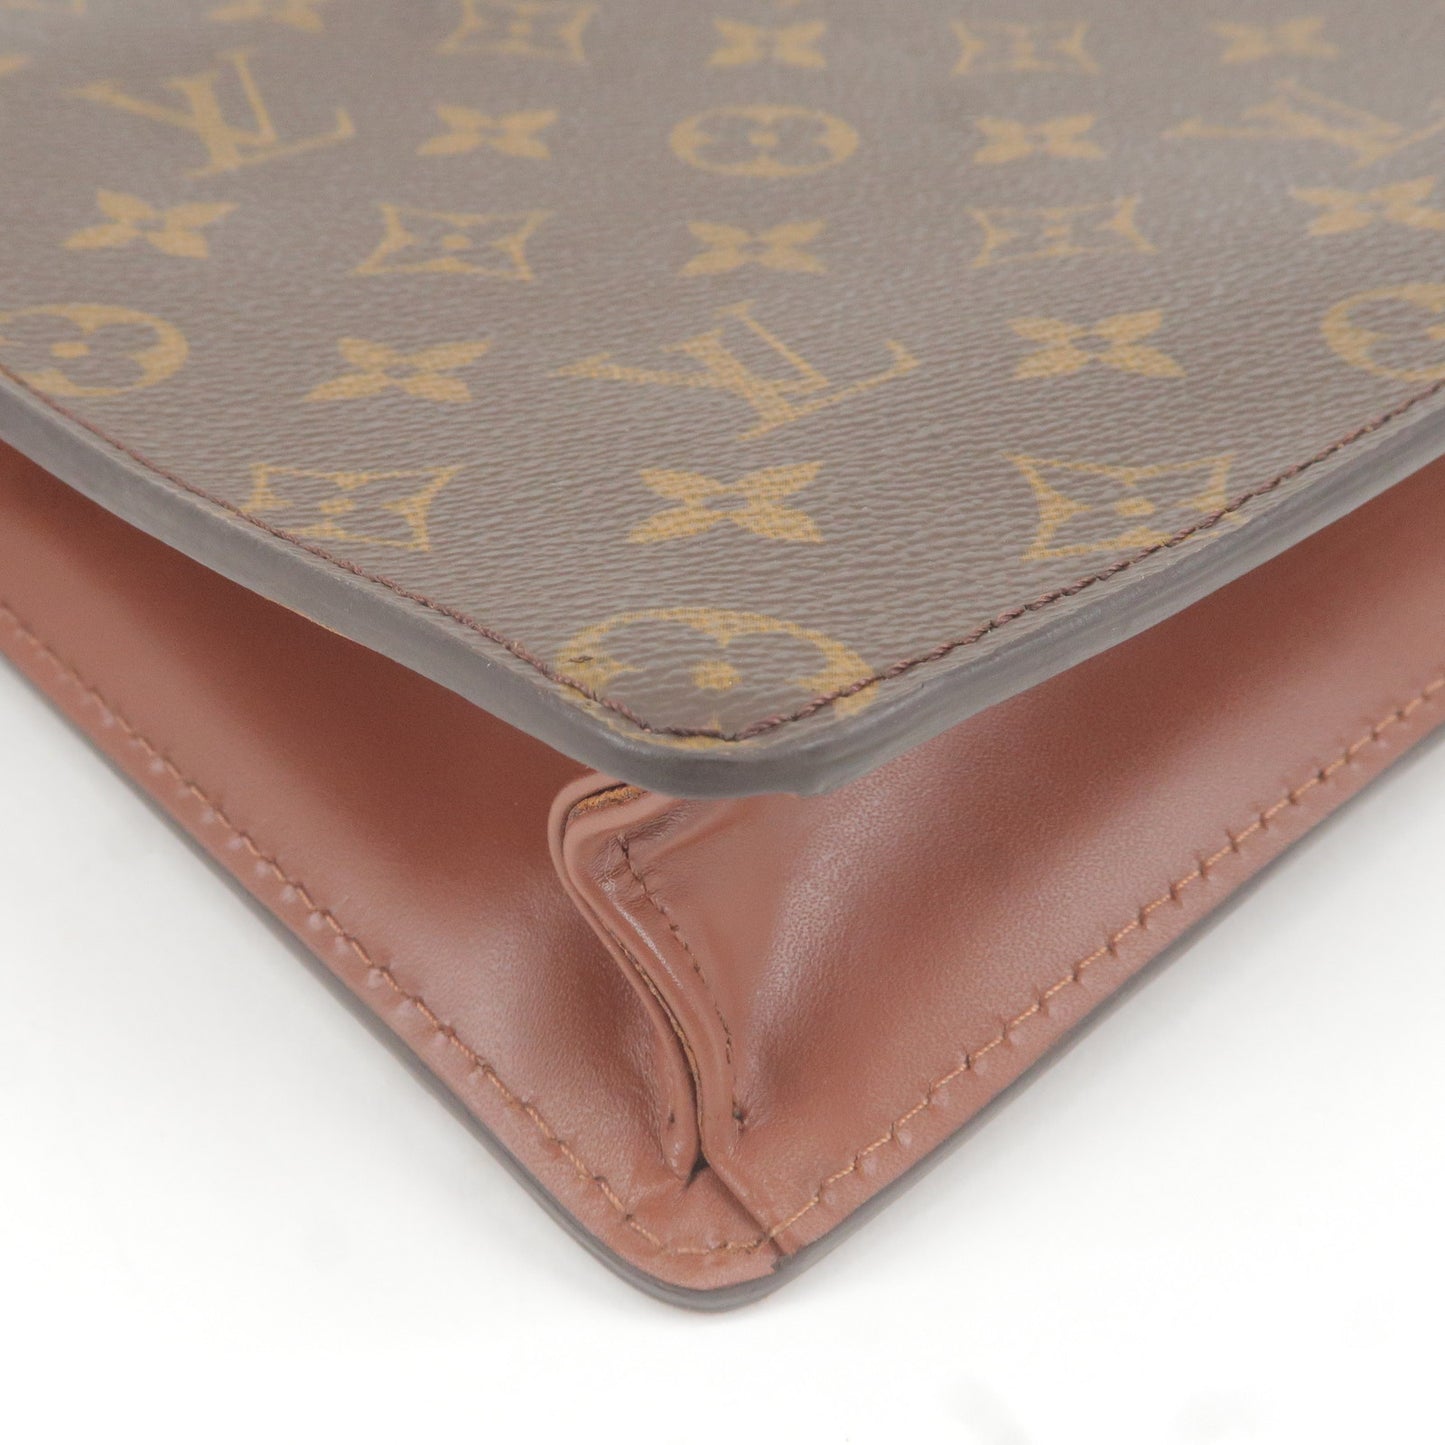 Louis Vuitton Monogram Pochette Homme Clutch Bag M51795